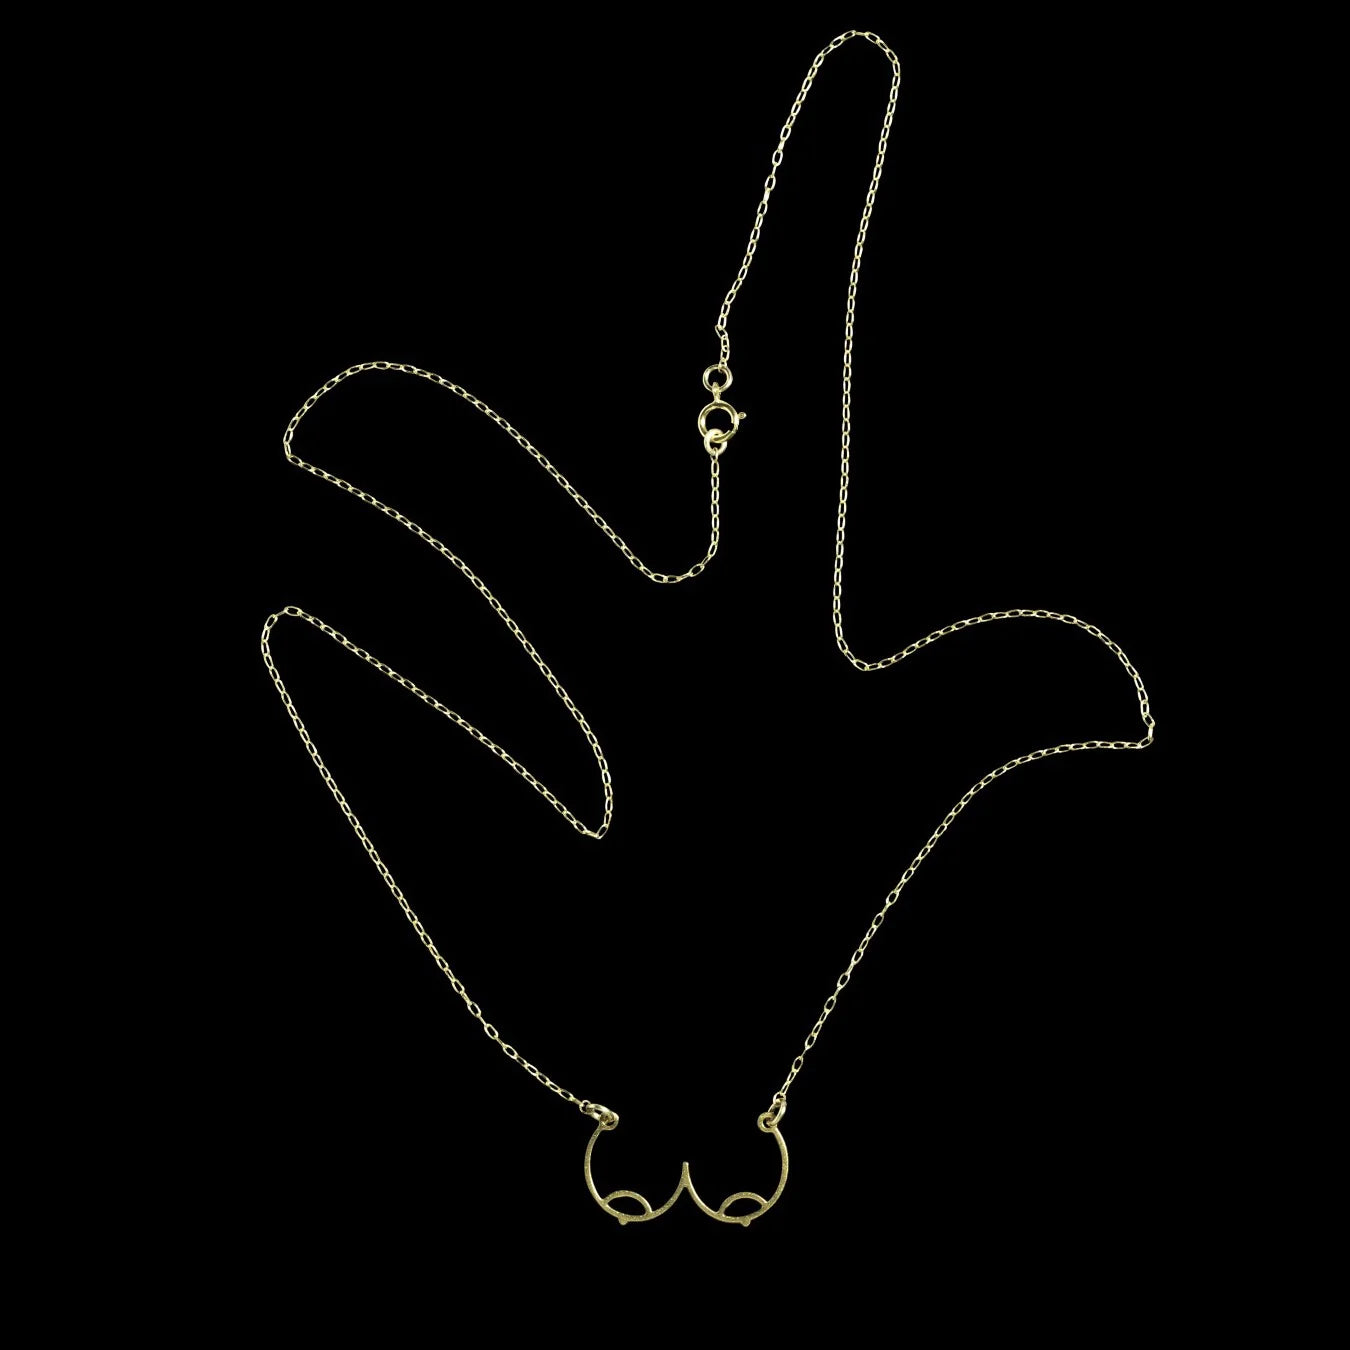 Boobs2 Necklace - Assaf Frenkel